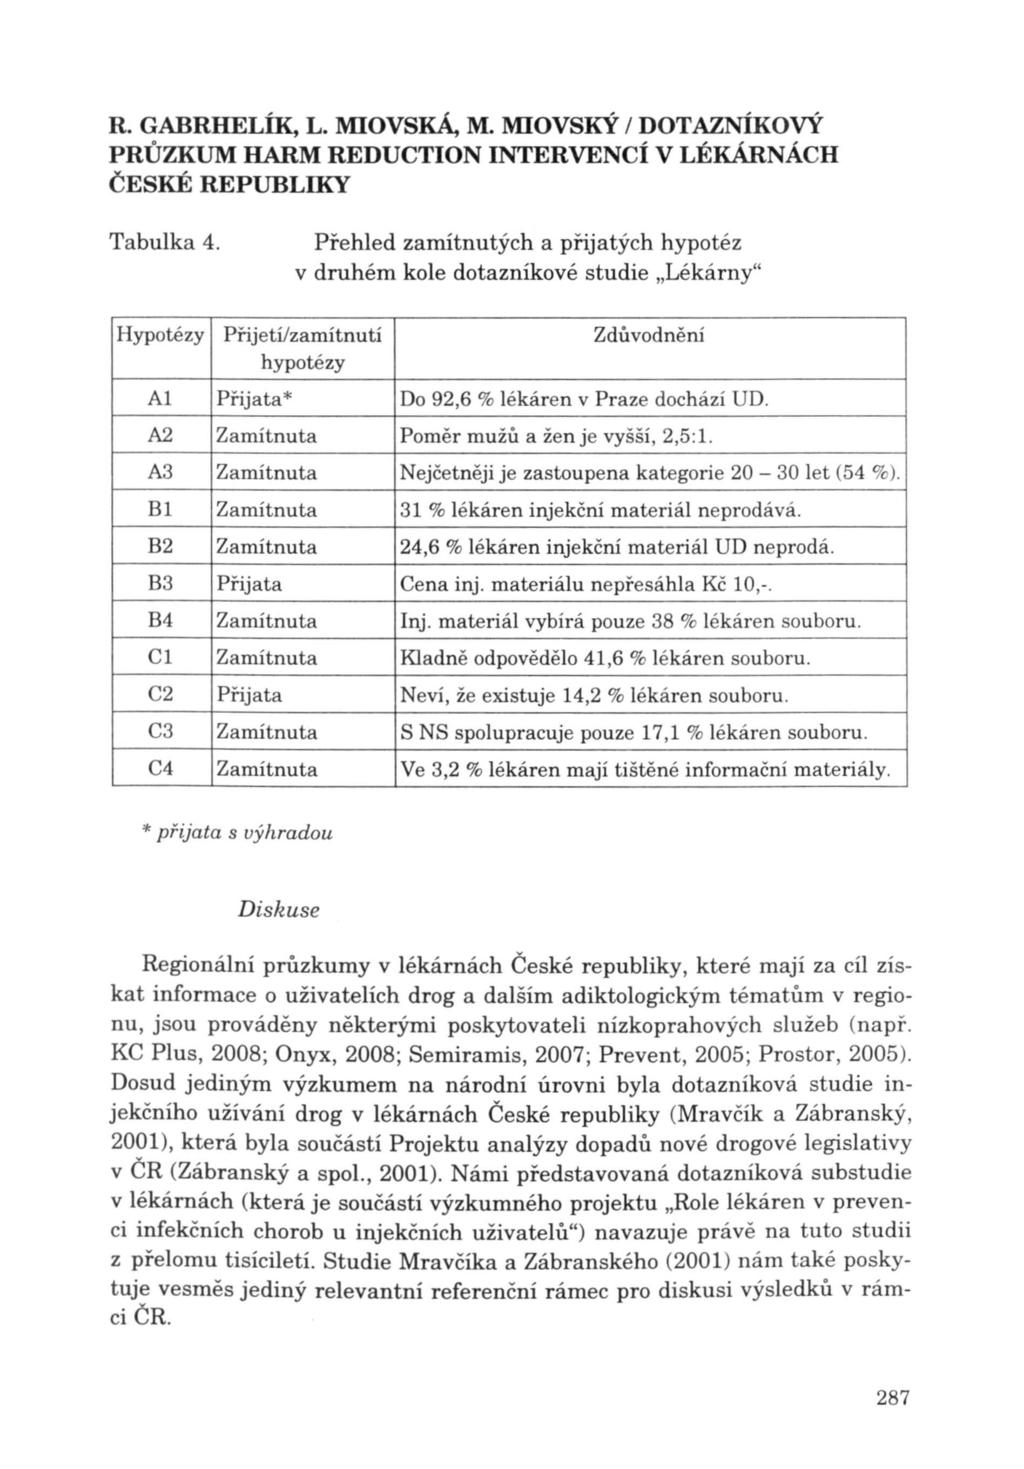 R. GABRHELÍK, L. MIOvsKÁ, M. MIOvsKÝ / DOTAZNÍKOVÝ Tabulka 4.